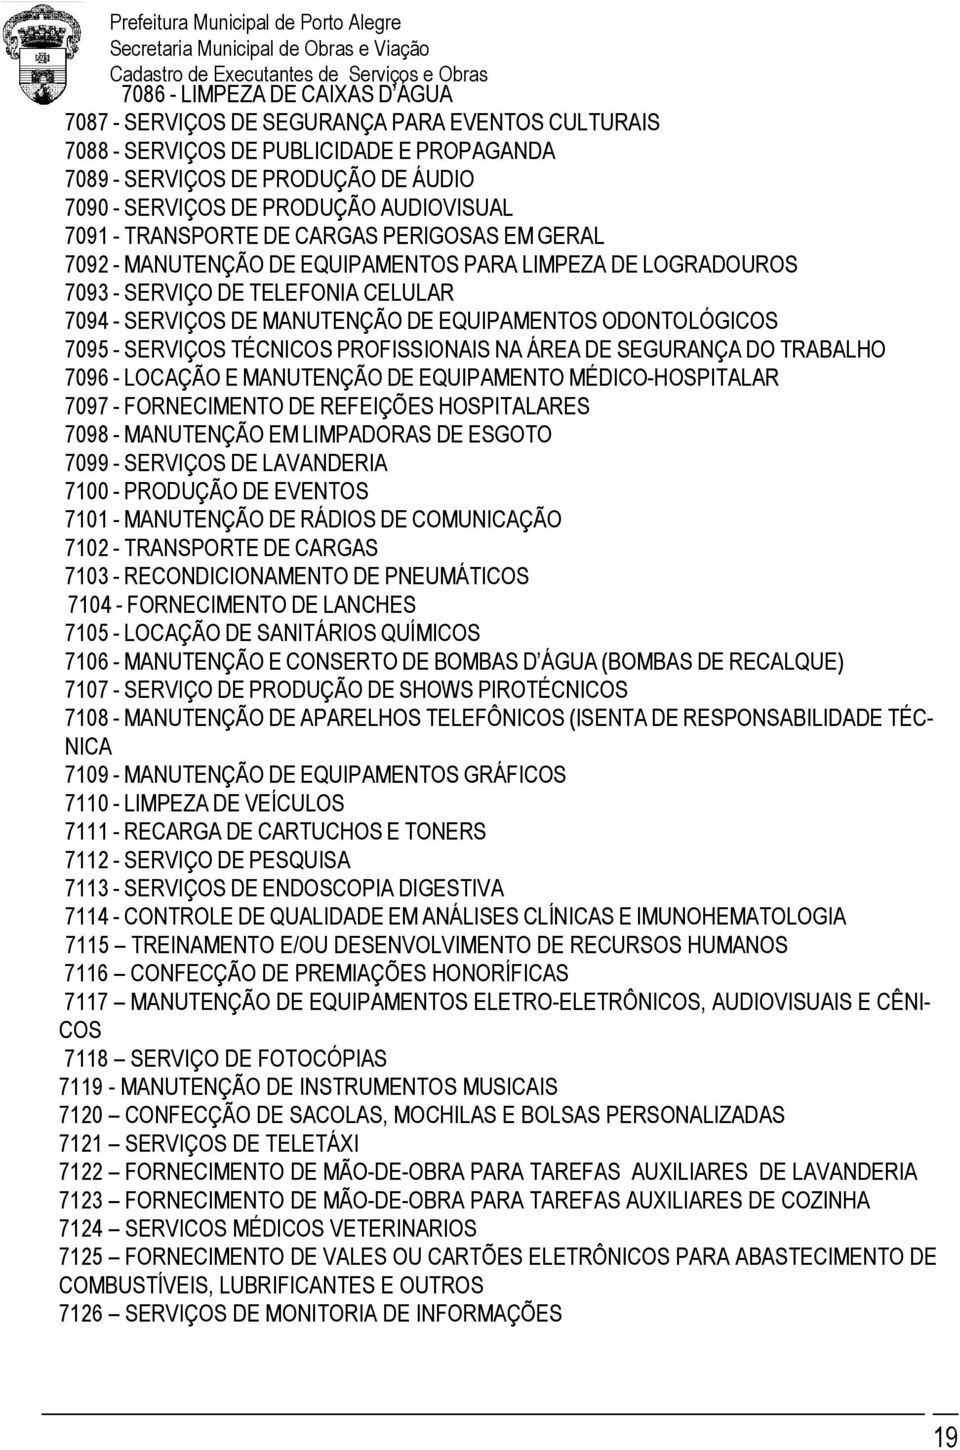 EQUIPAMENTOS ODONTOLÓGICOS 7095 - SERVIÇOS TÉCNICOS PROFISSIONAIS NA ÁREA DE SEGURANÇA DO TRABALHO 7096 - LOCAÇÃO E MANUTENÇÃO DE EQUIPAMENTO MÉDICO-HOSPITALAR 7097 - FORNECIMENTO DE REFEIÇÕES